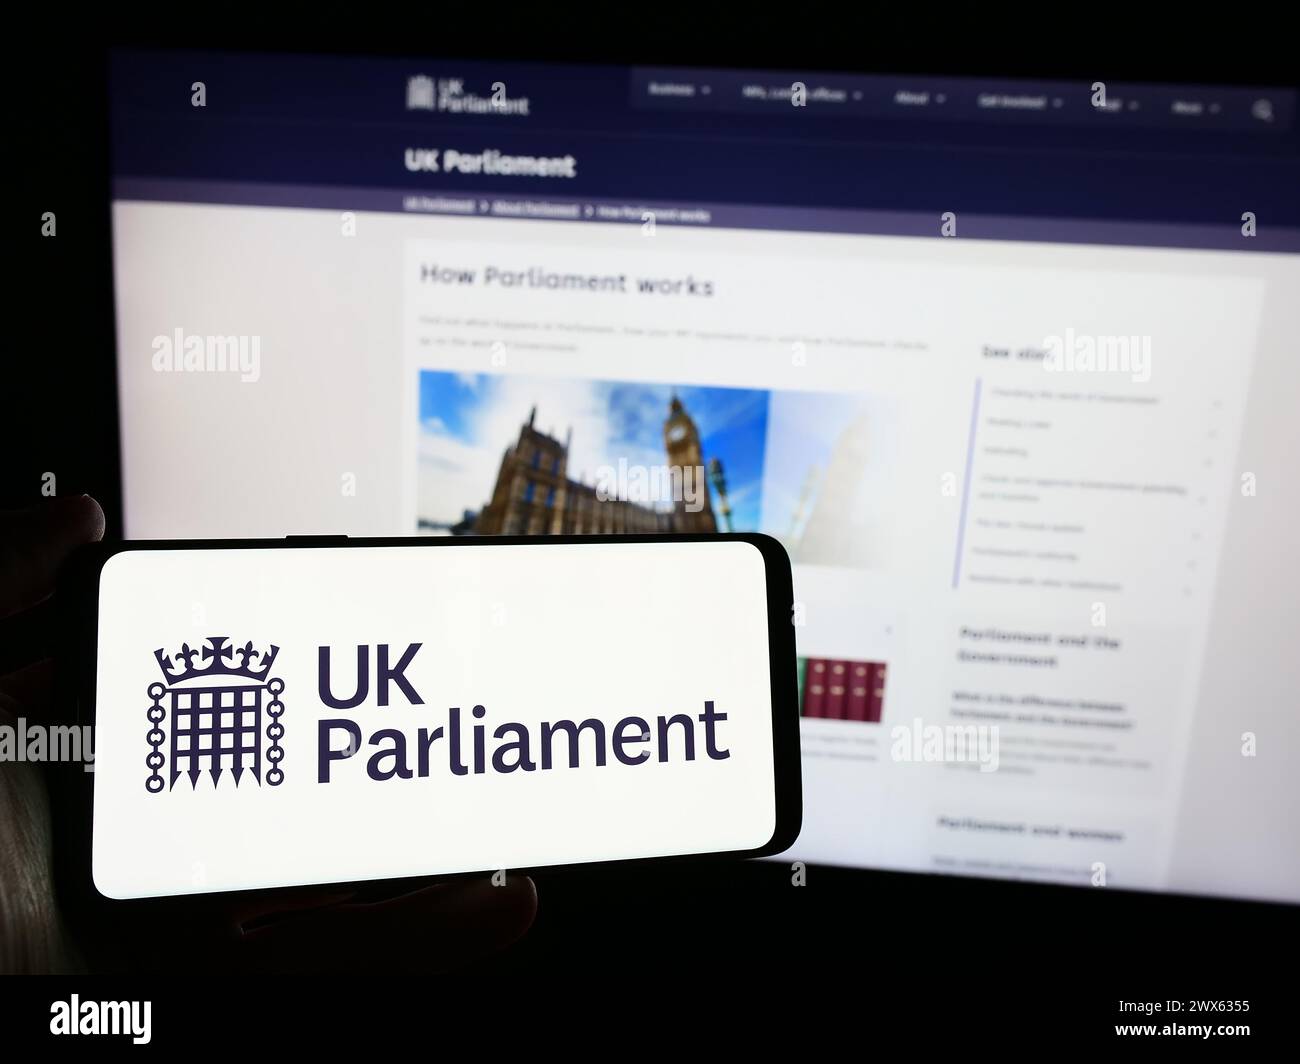 Persona che possiede uno smartphone con il logo dell'organo legislativo Parlamento del Regno Unito (UK) davanti al sito web. Mettere a fuoco il display del telefono. Foto Stock